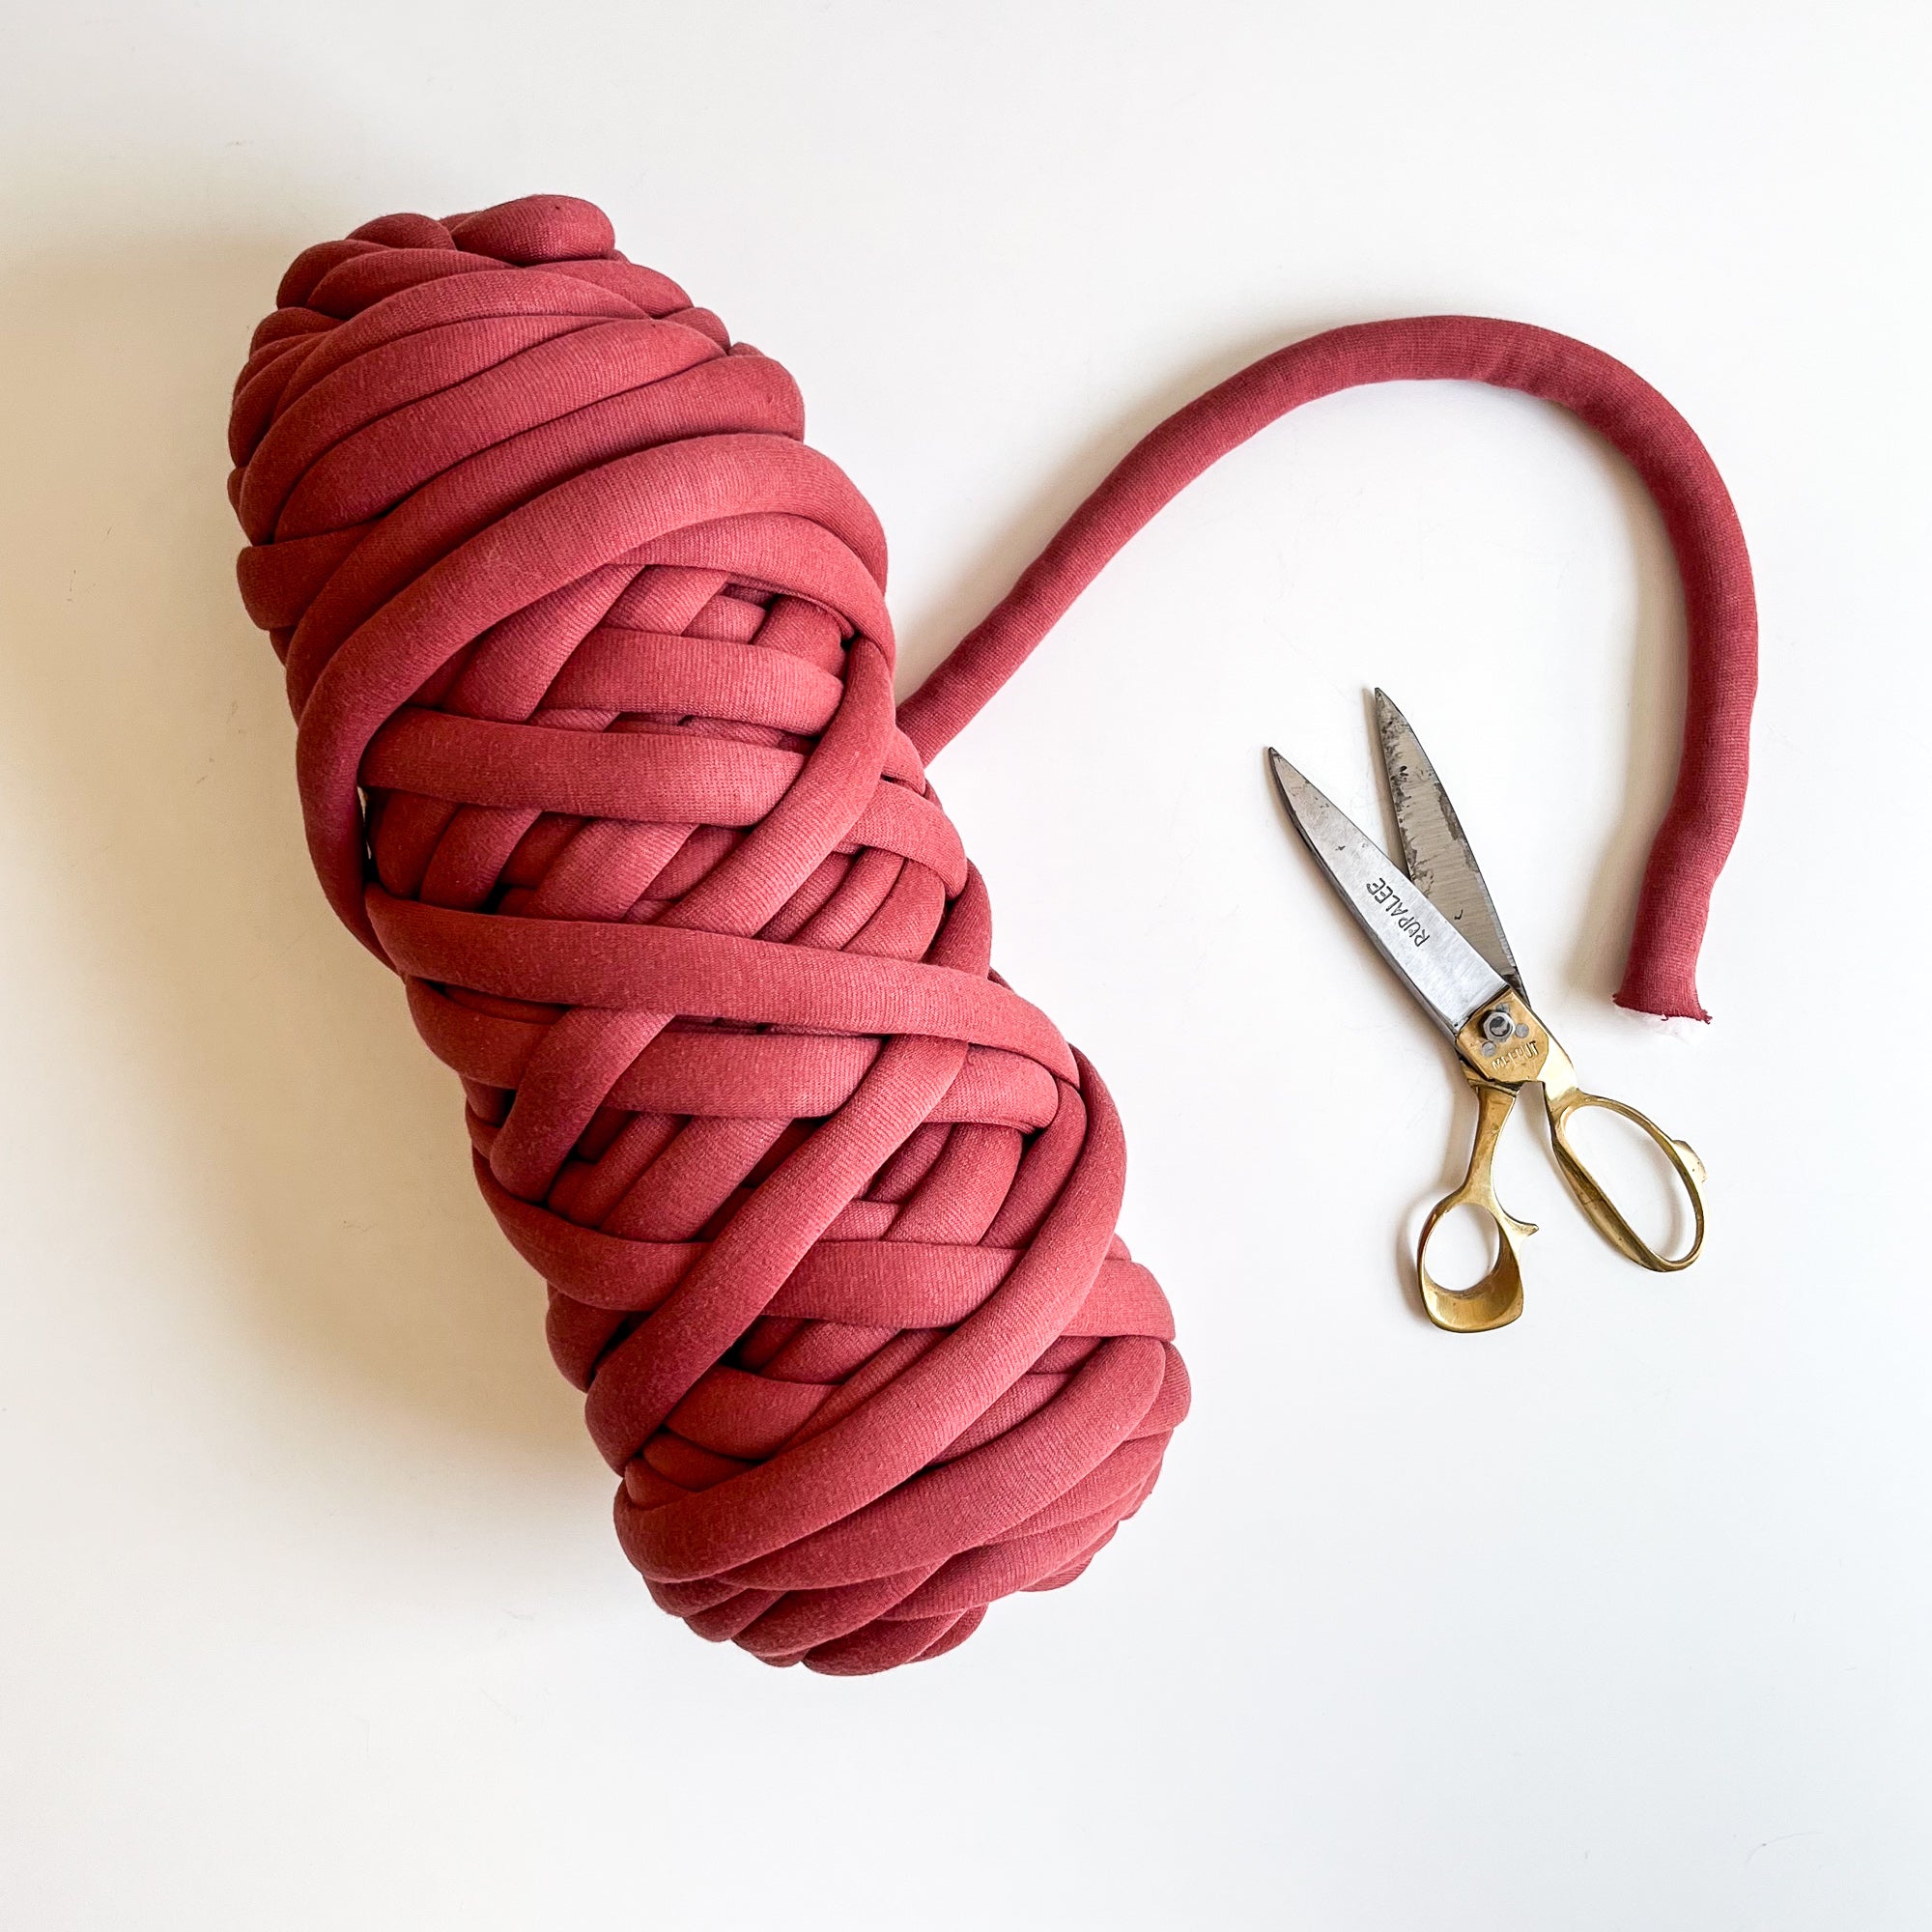 Christa Crochet Basket Kit